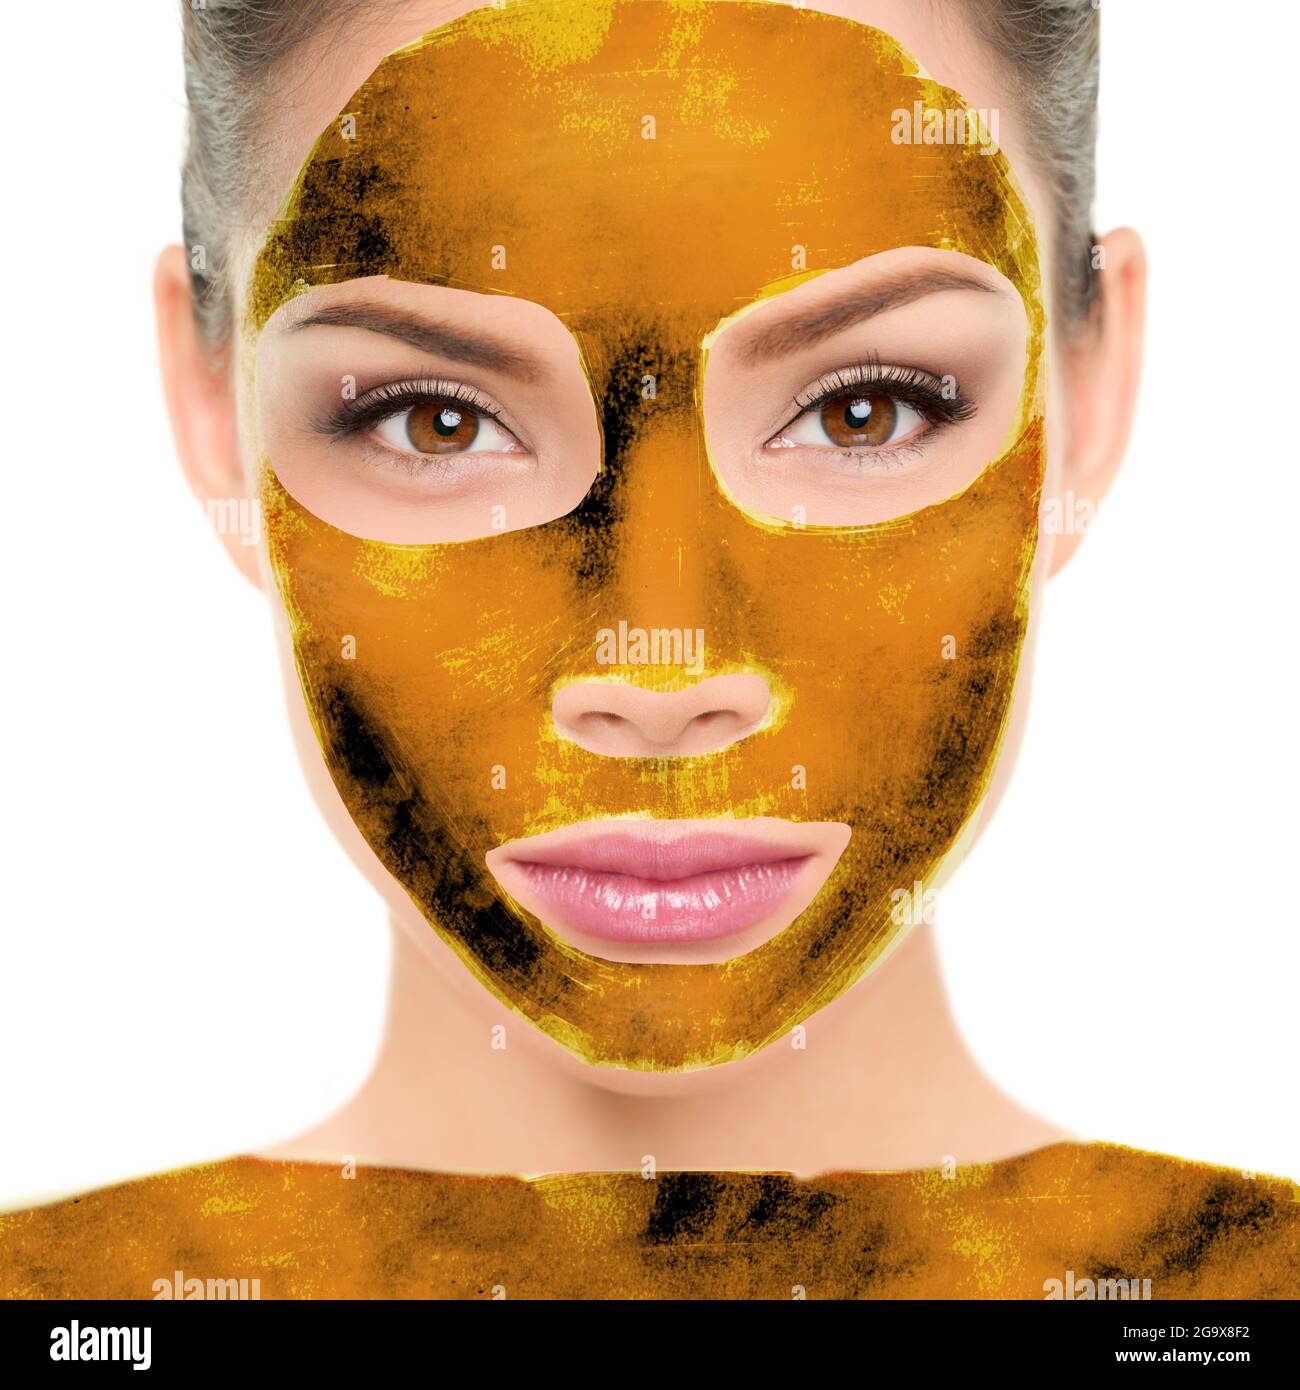 Luxe pur 24k or masque feuille corps enveloppement et soin du visage beauté asiatique femme visage portrait. Cosmétologie soin de la peau thérapie avec la vraie feuille d'or Banque D'Images